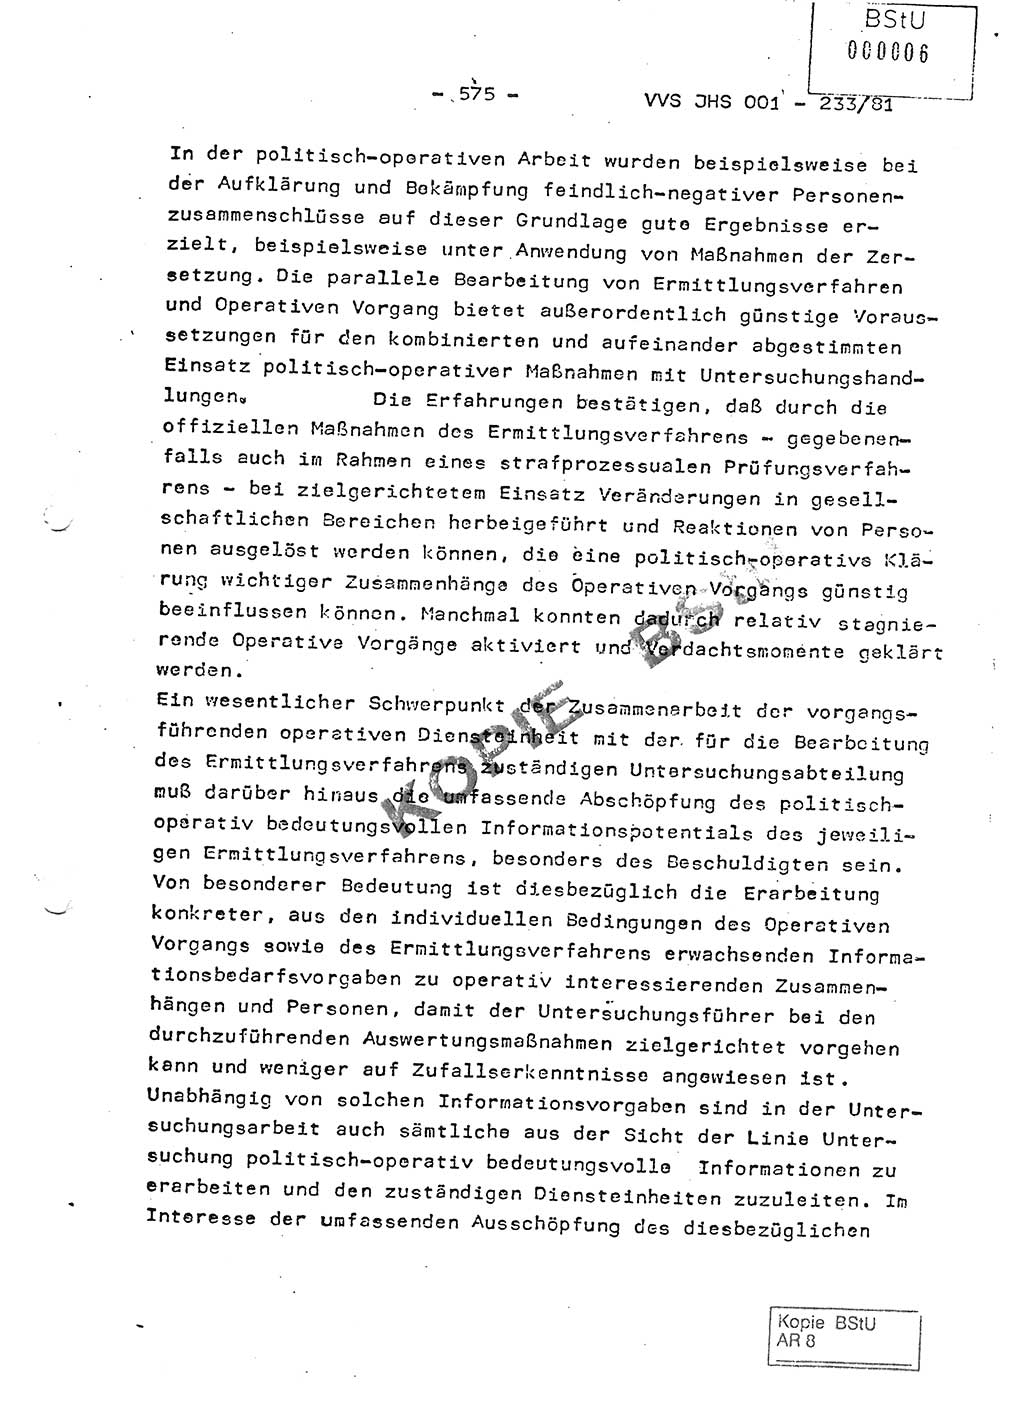 Dissertation Oberstleutnant Horst Zank (JHS), Oberstleutnant Dr. Karl-Heinz Knoblauch (JHS), Oberstleutnant Gustav-Adolf Kowalewski (HA Ⅸ), Oberstleutnant Wolfgang Plötner (HA Ⅸ), Ministerium für Staatssicherheit (MfS) [Deutsche Demokratische Republik (DDR)], Juristische Hochschule (JHS), Vertrauliche Verschlußsache (VVS) o001-233/81, Potsdam 1981, Blatt 575 (Diss. MfS DDR JHS VVS o001-233/81 1981, Bl. 575)